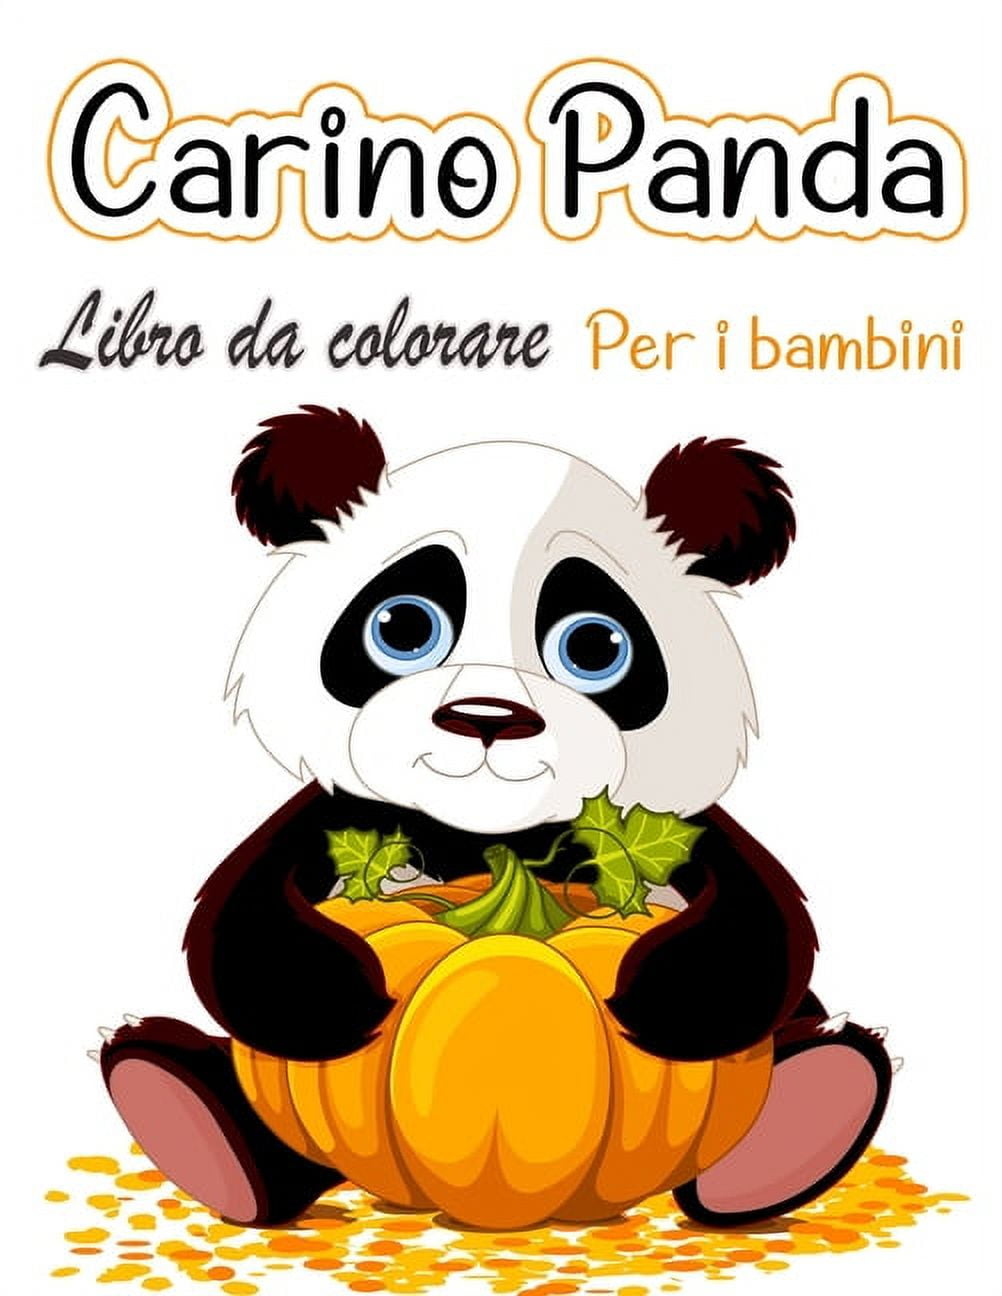 Libro da colorare panda carino per bambini : Disegni da colorare per i  bambini che amano i panda carini, regalo per ragazzi e ragazze dai 2 agli 8  anni (Paperback) 